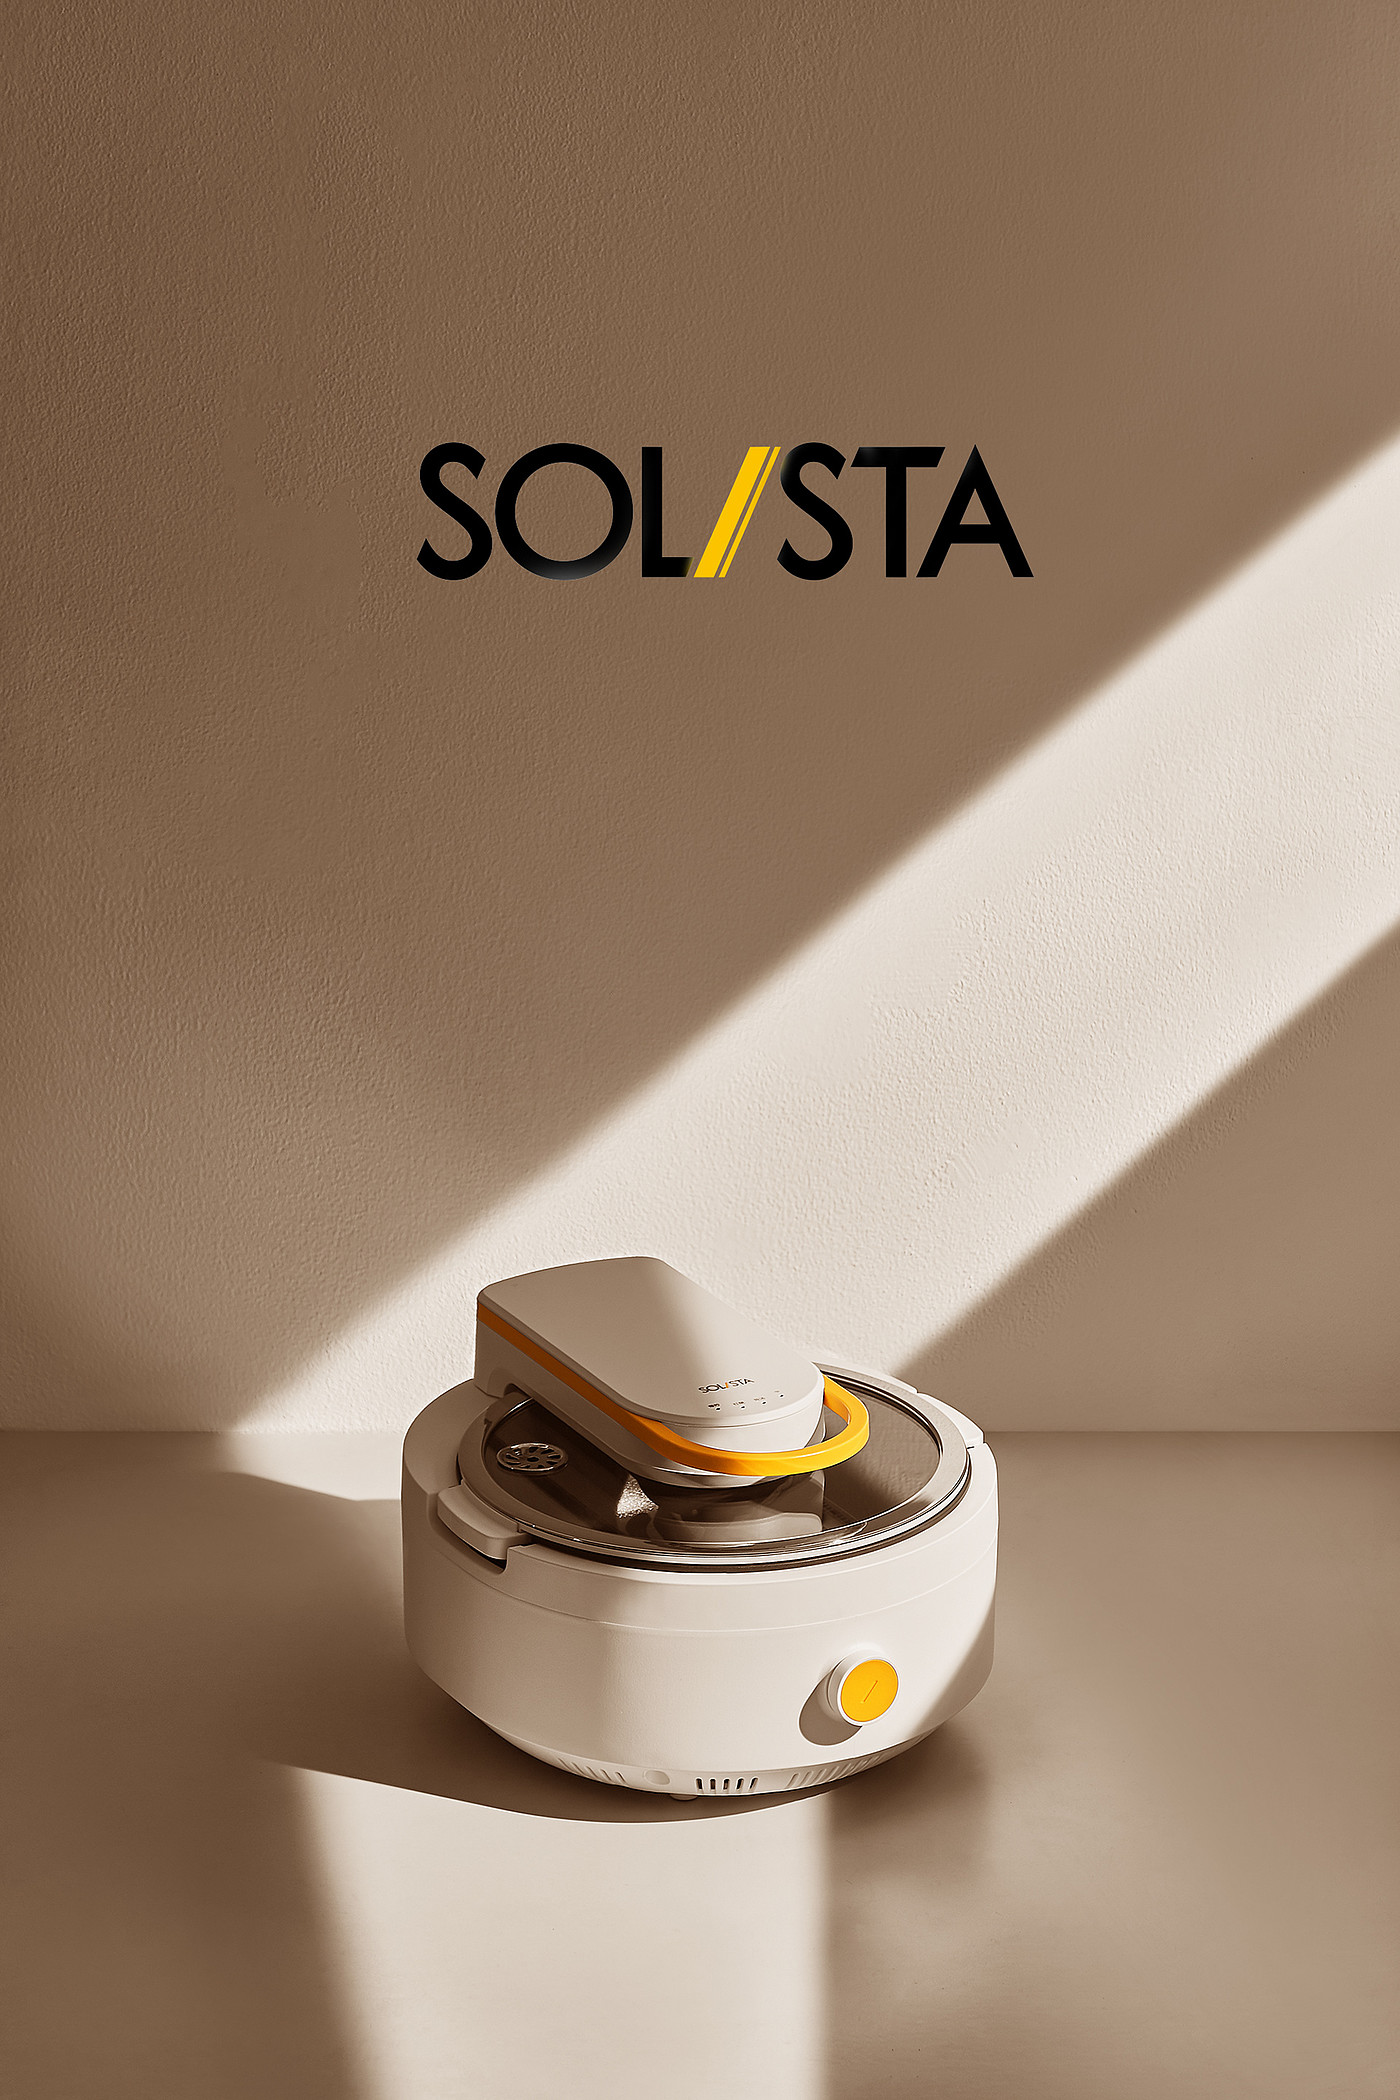 SOL/STA，工业设计，电器，智能炒菜锅，自动炒菜机，